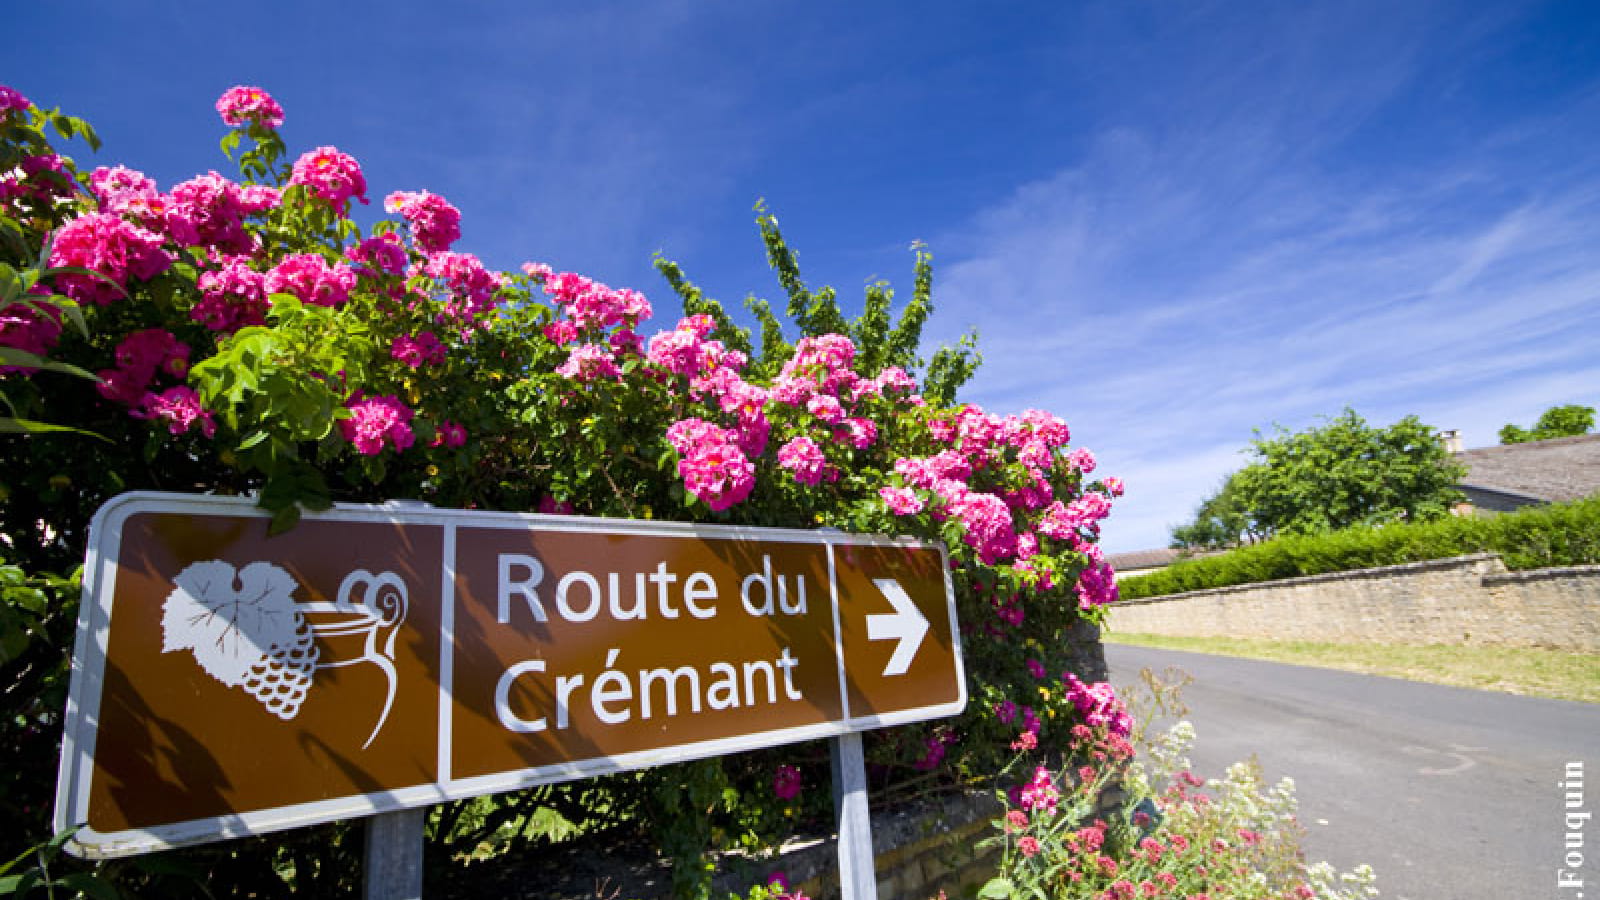 Route du Crémant